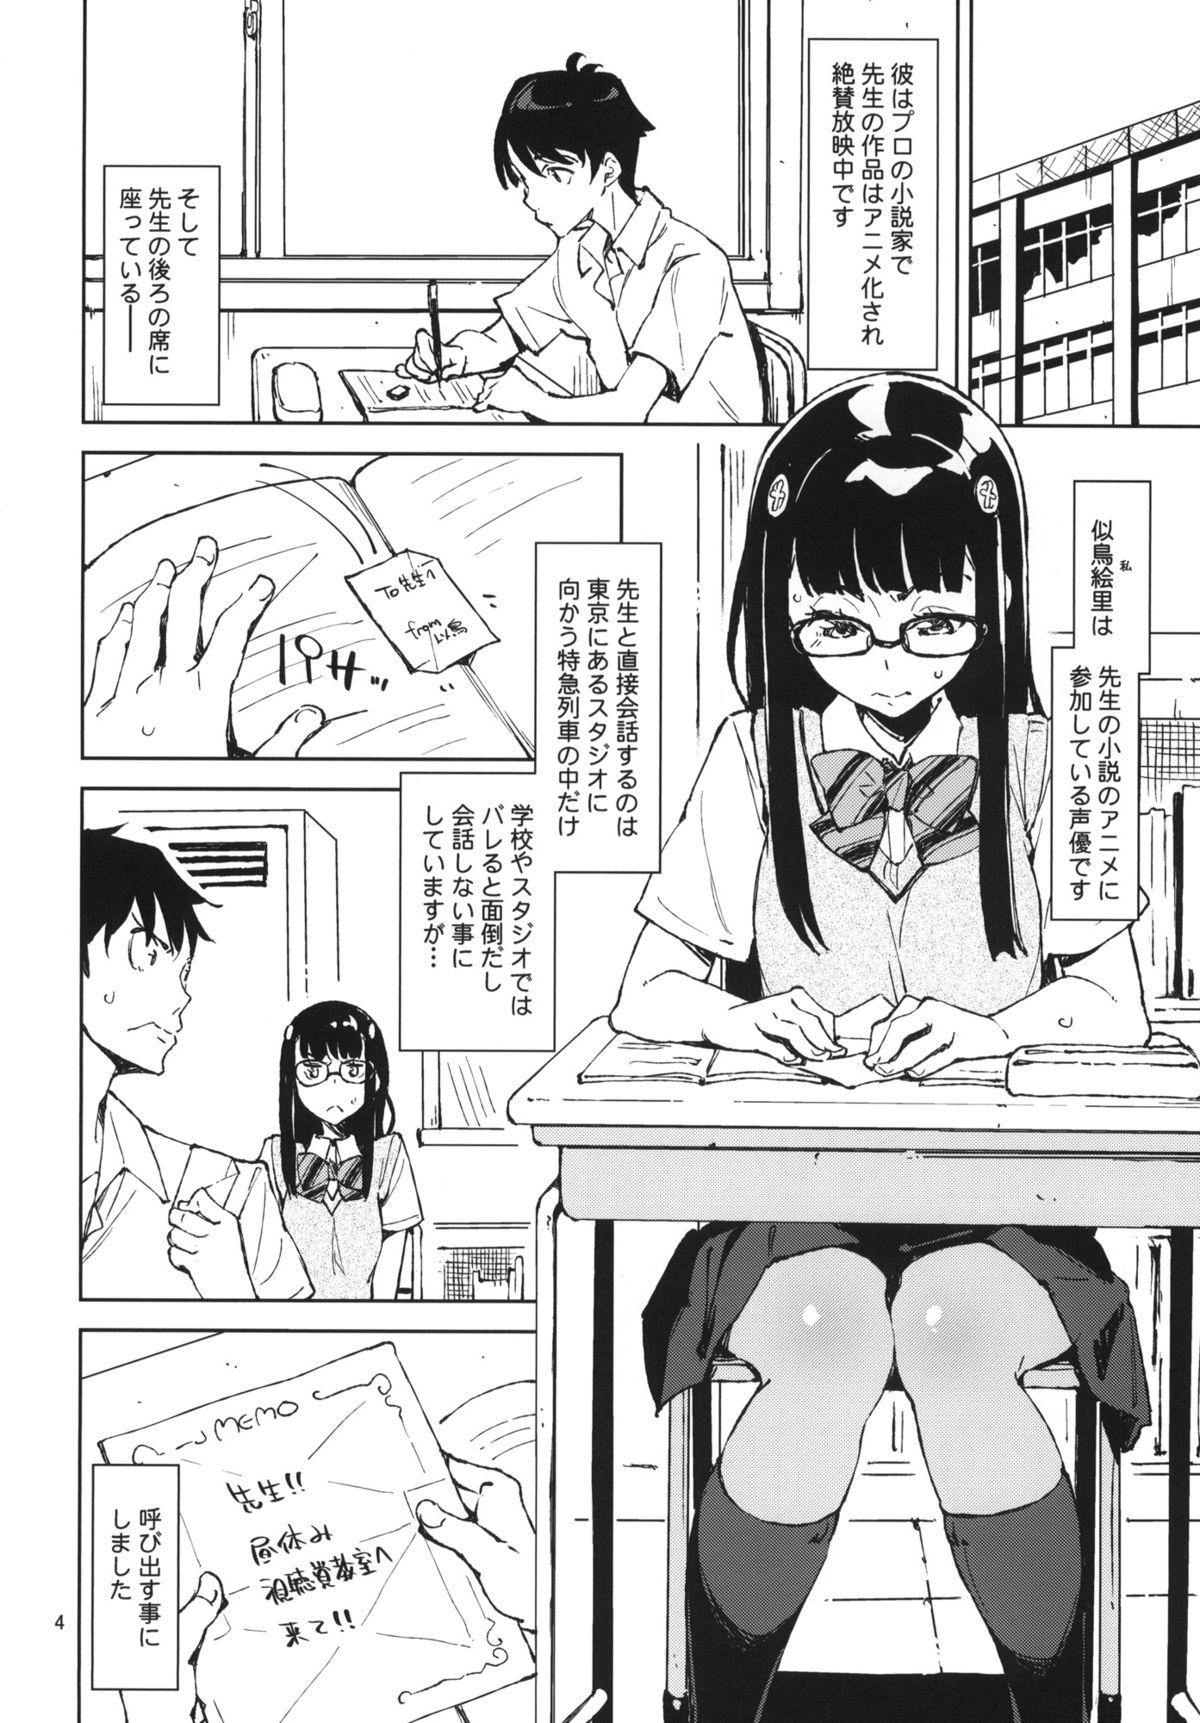 Desi Pony - Danshi koukousei de urekko light novel sakka o shiteiru keredo Cartoon - Page 3